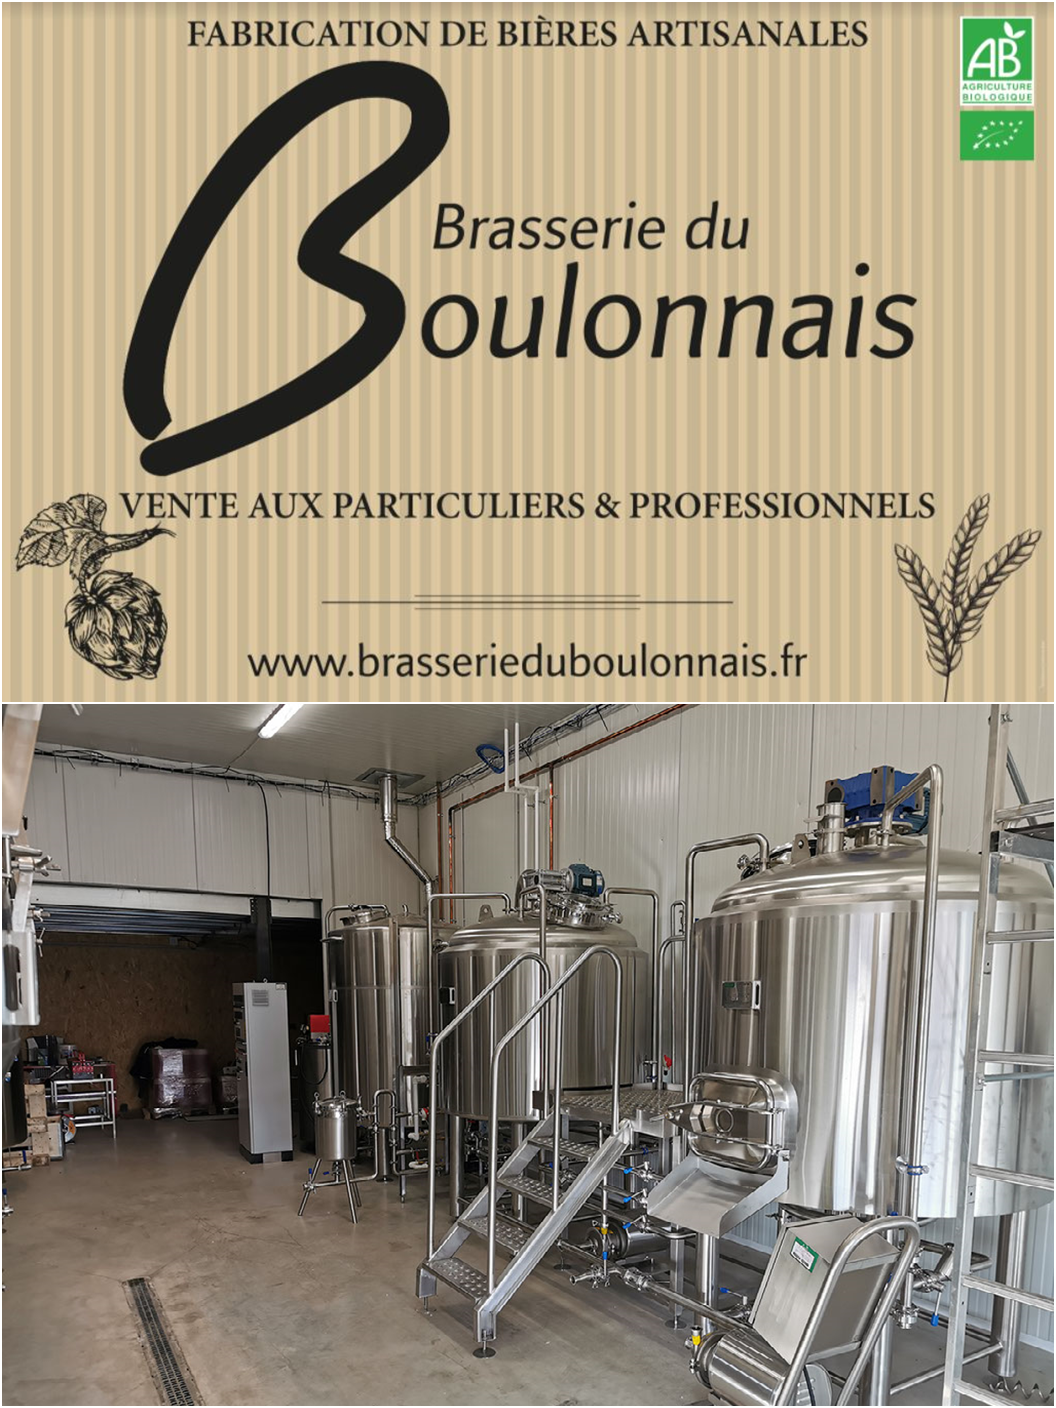 La Brasserie Boulonnaise, rencontre avec David Naus, brasseur.